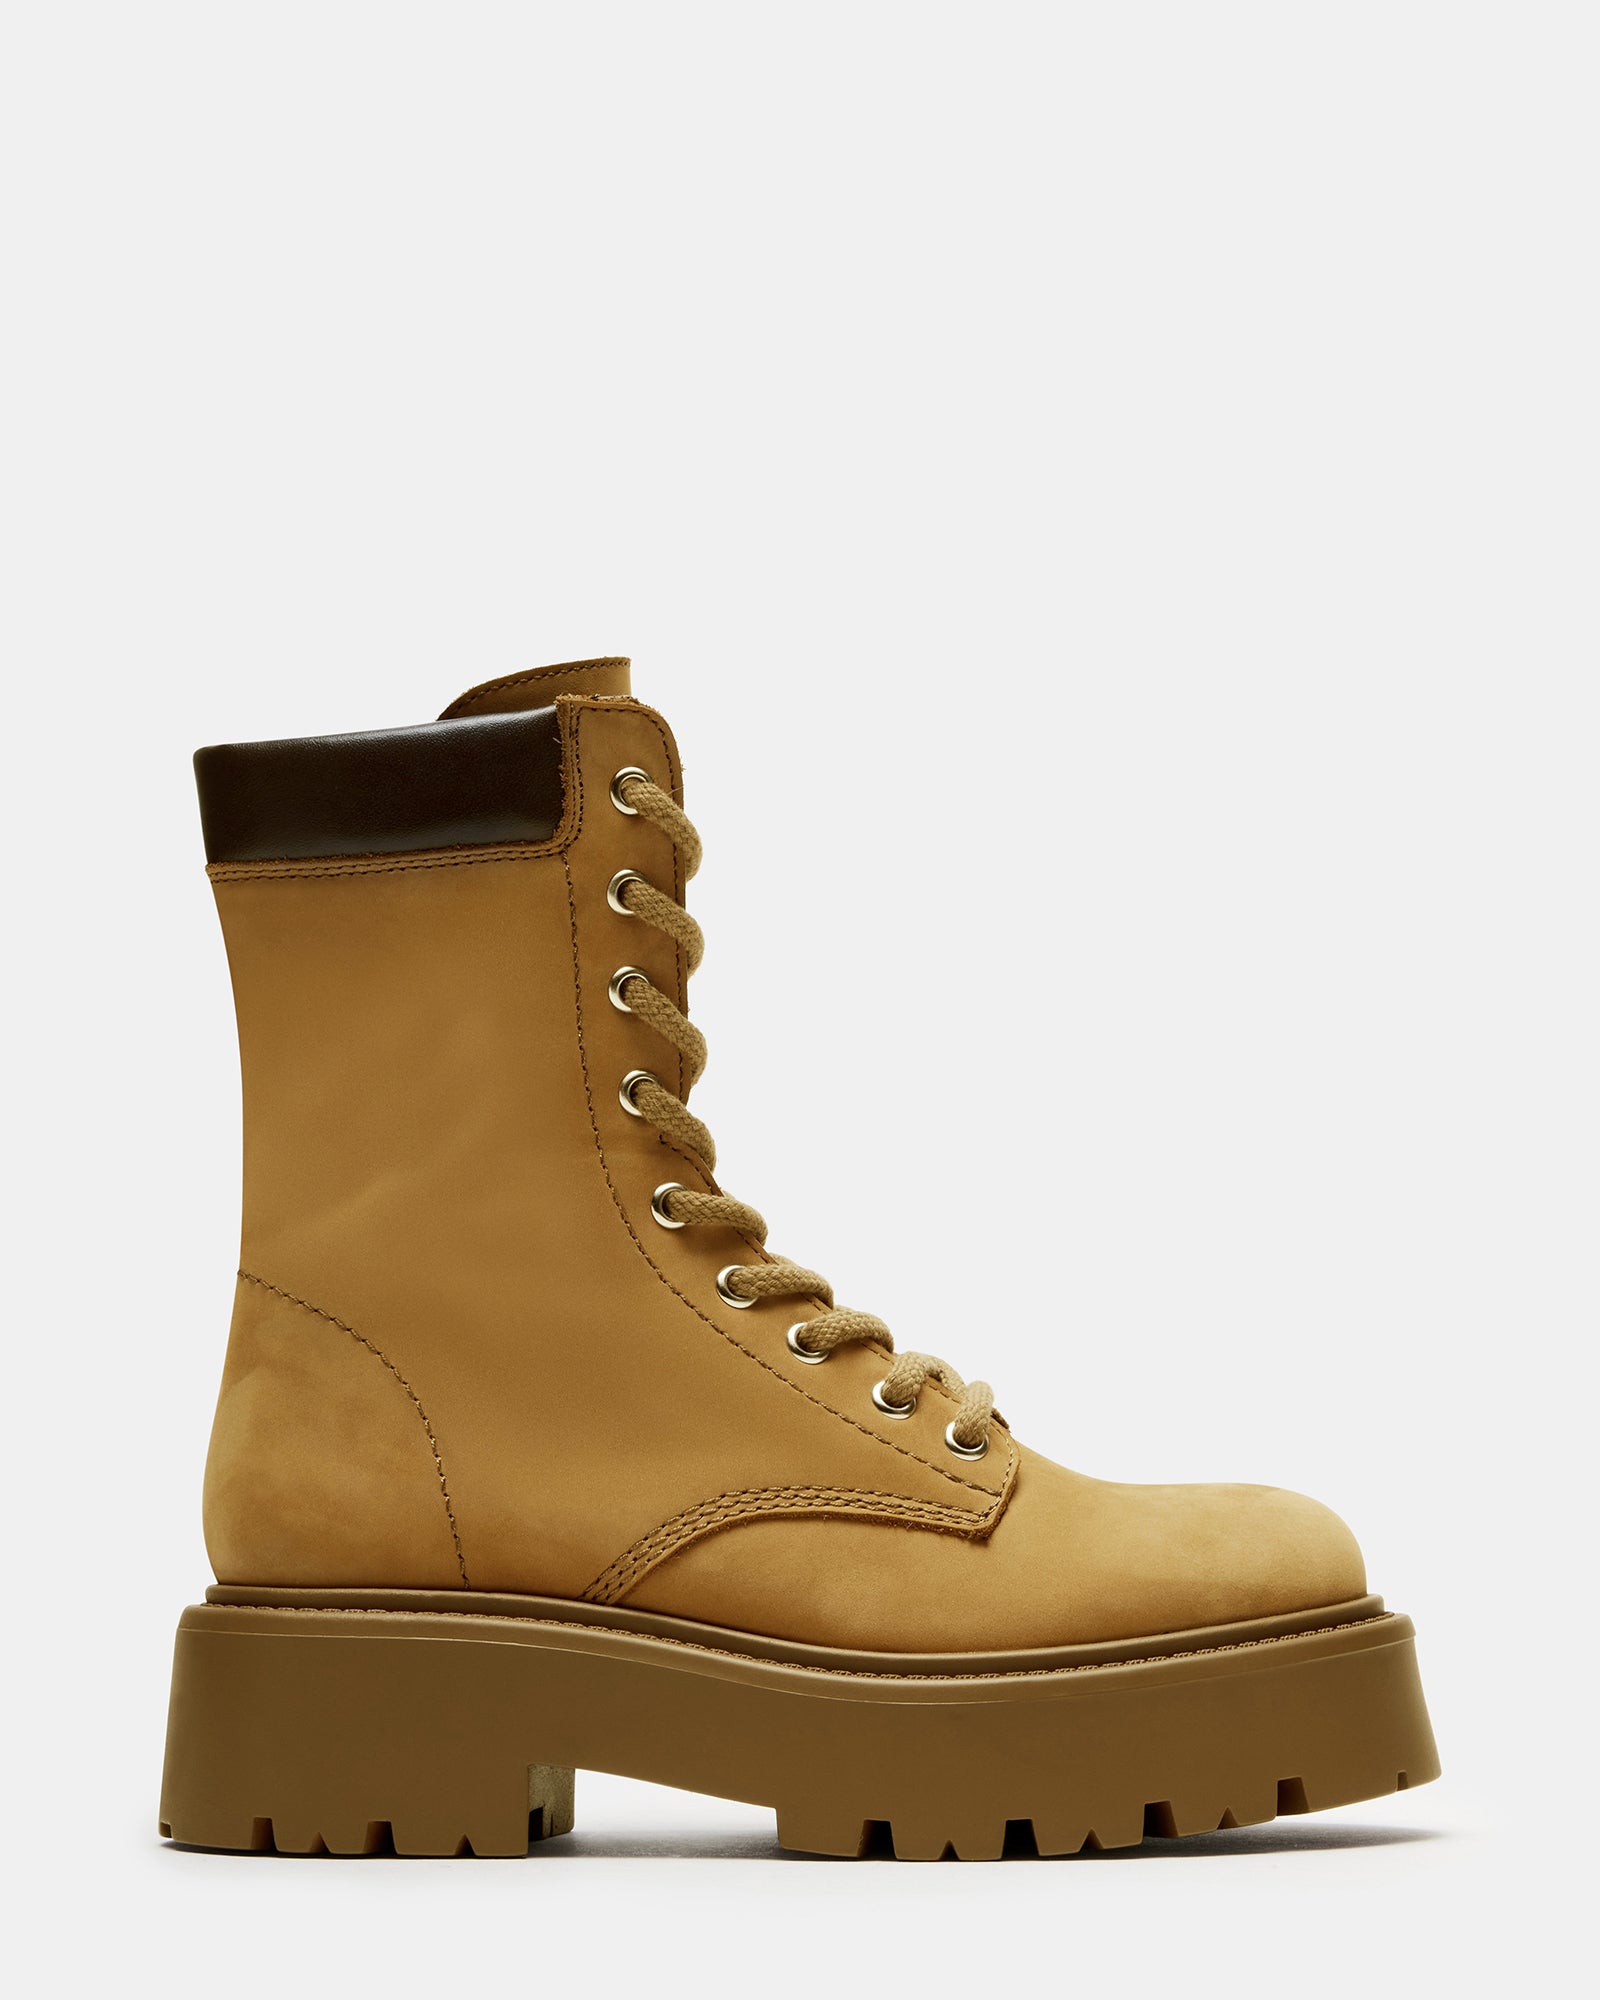 Forever 21 stiletto heel combat boots tan brown... - Depop